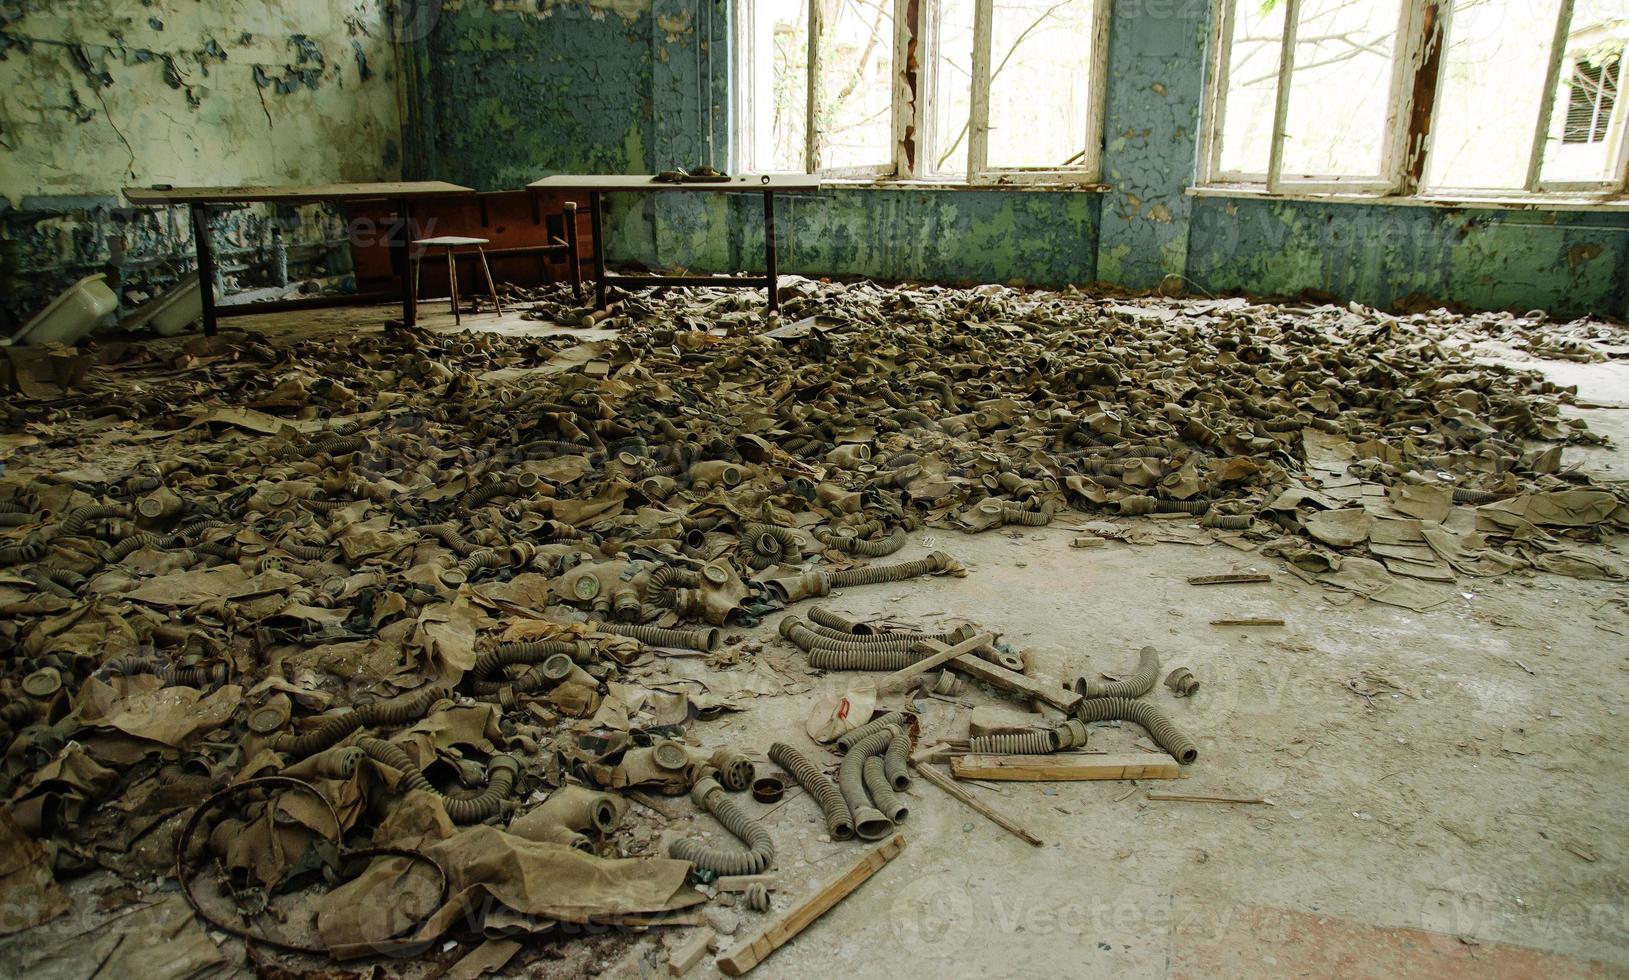 maschere antigas per radiazioni infette sul pavimento in una scuola media abbandonata nella zona di alienazione della centrale nucleare di Chernobyl foto